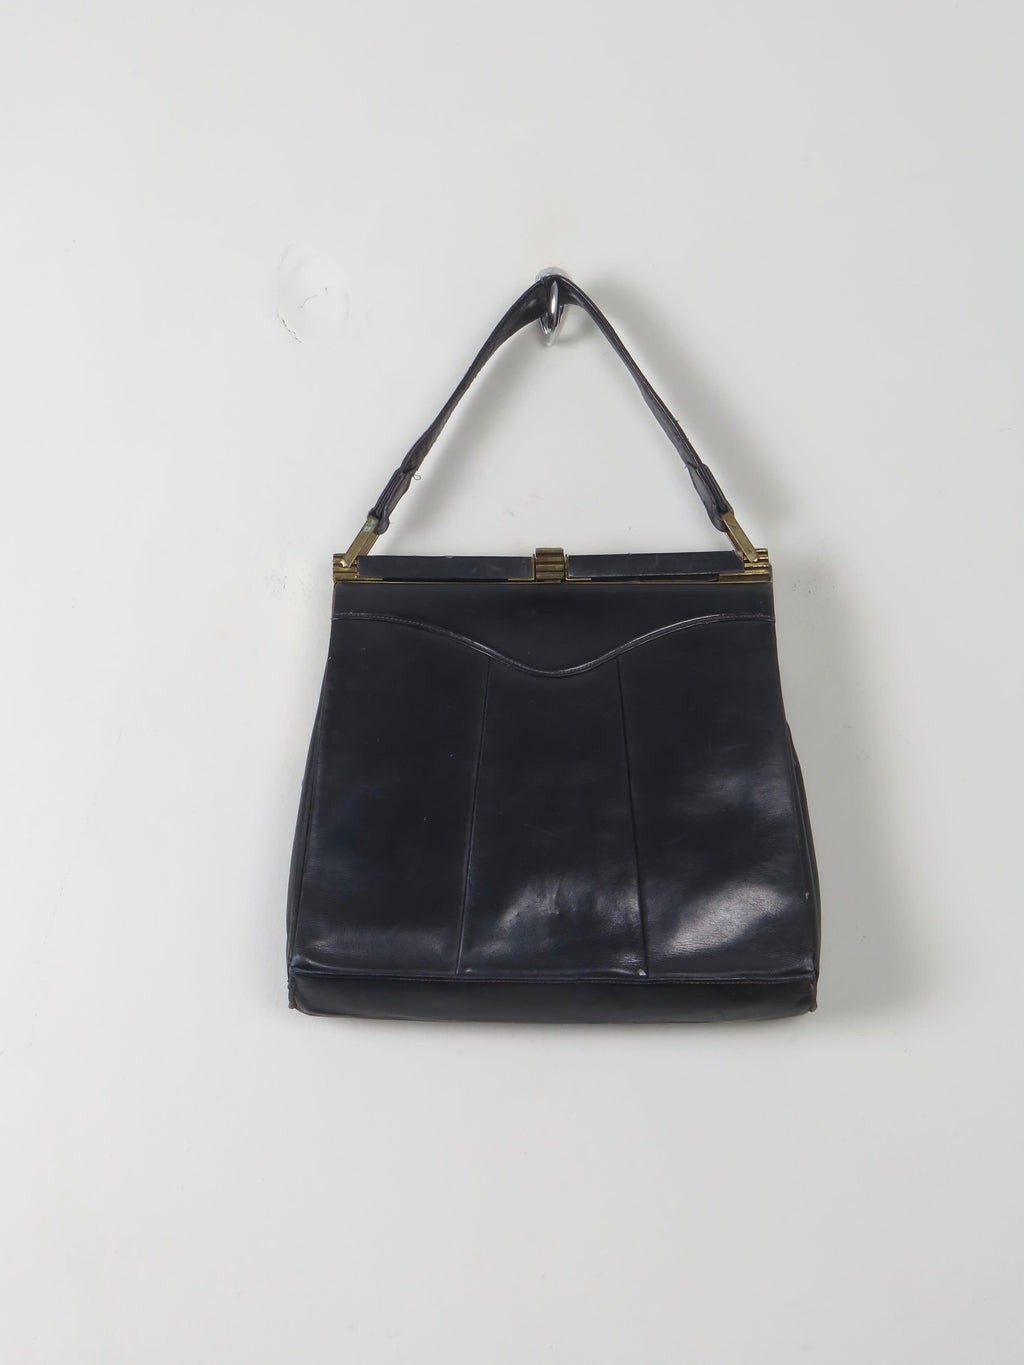 Vintage 1940s Navy Leather Handbag - The Harlequin